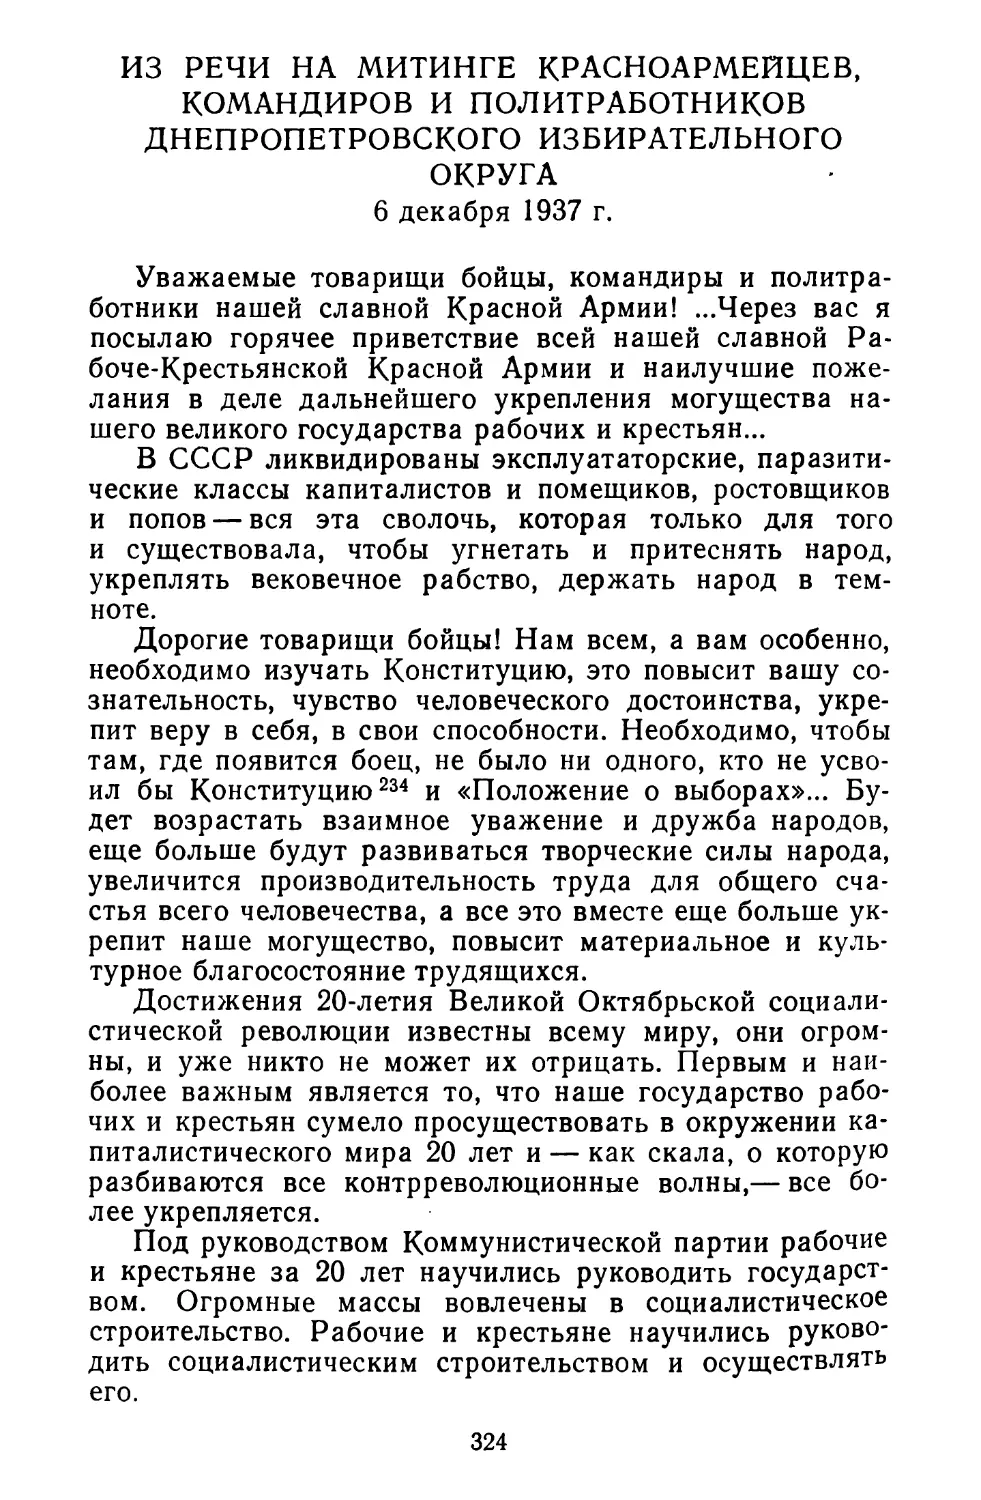 Из речи на митинге красноармейцев, командиров и политработников Днепропетровского избирательного округа. 6 декабря 1937 г.